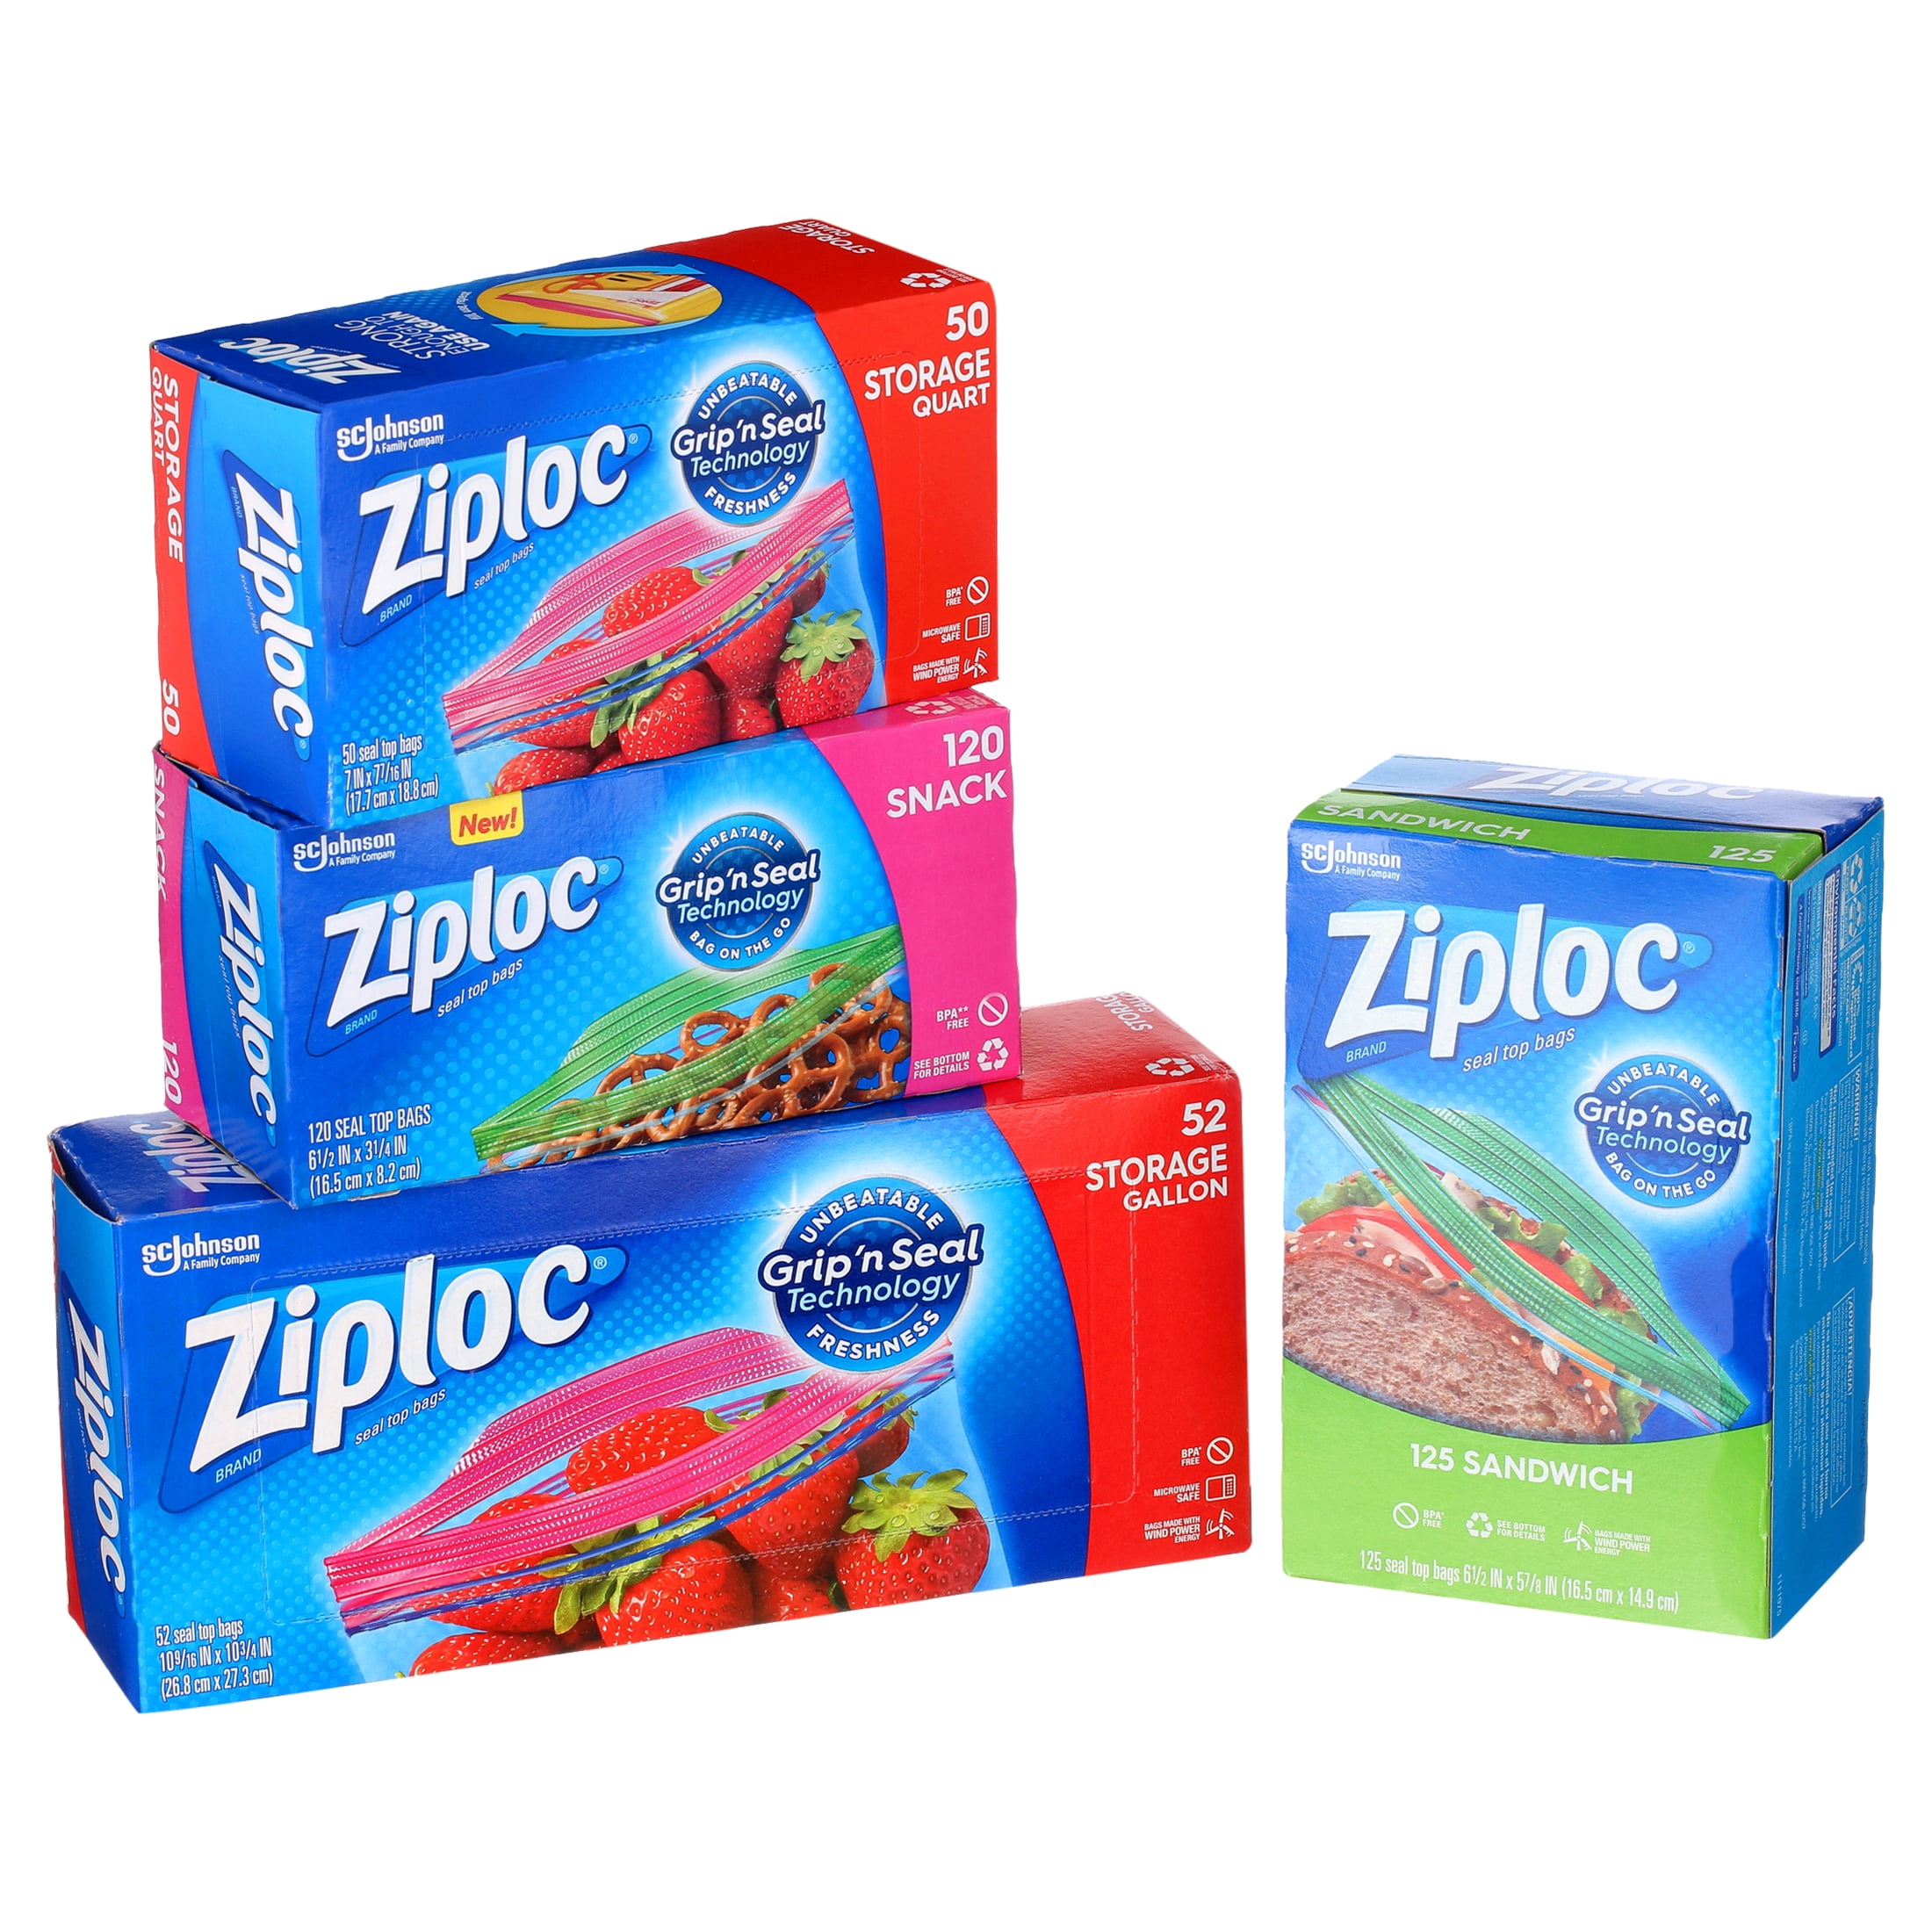 Ziploc Double Zipper Bag, Variety Pack, 347 Count